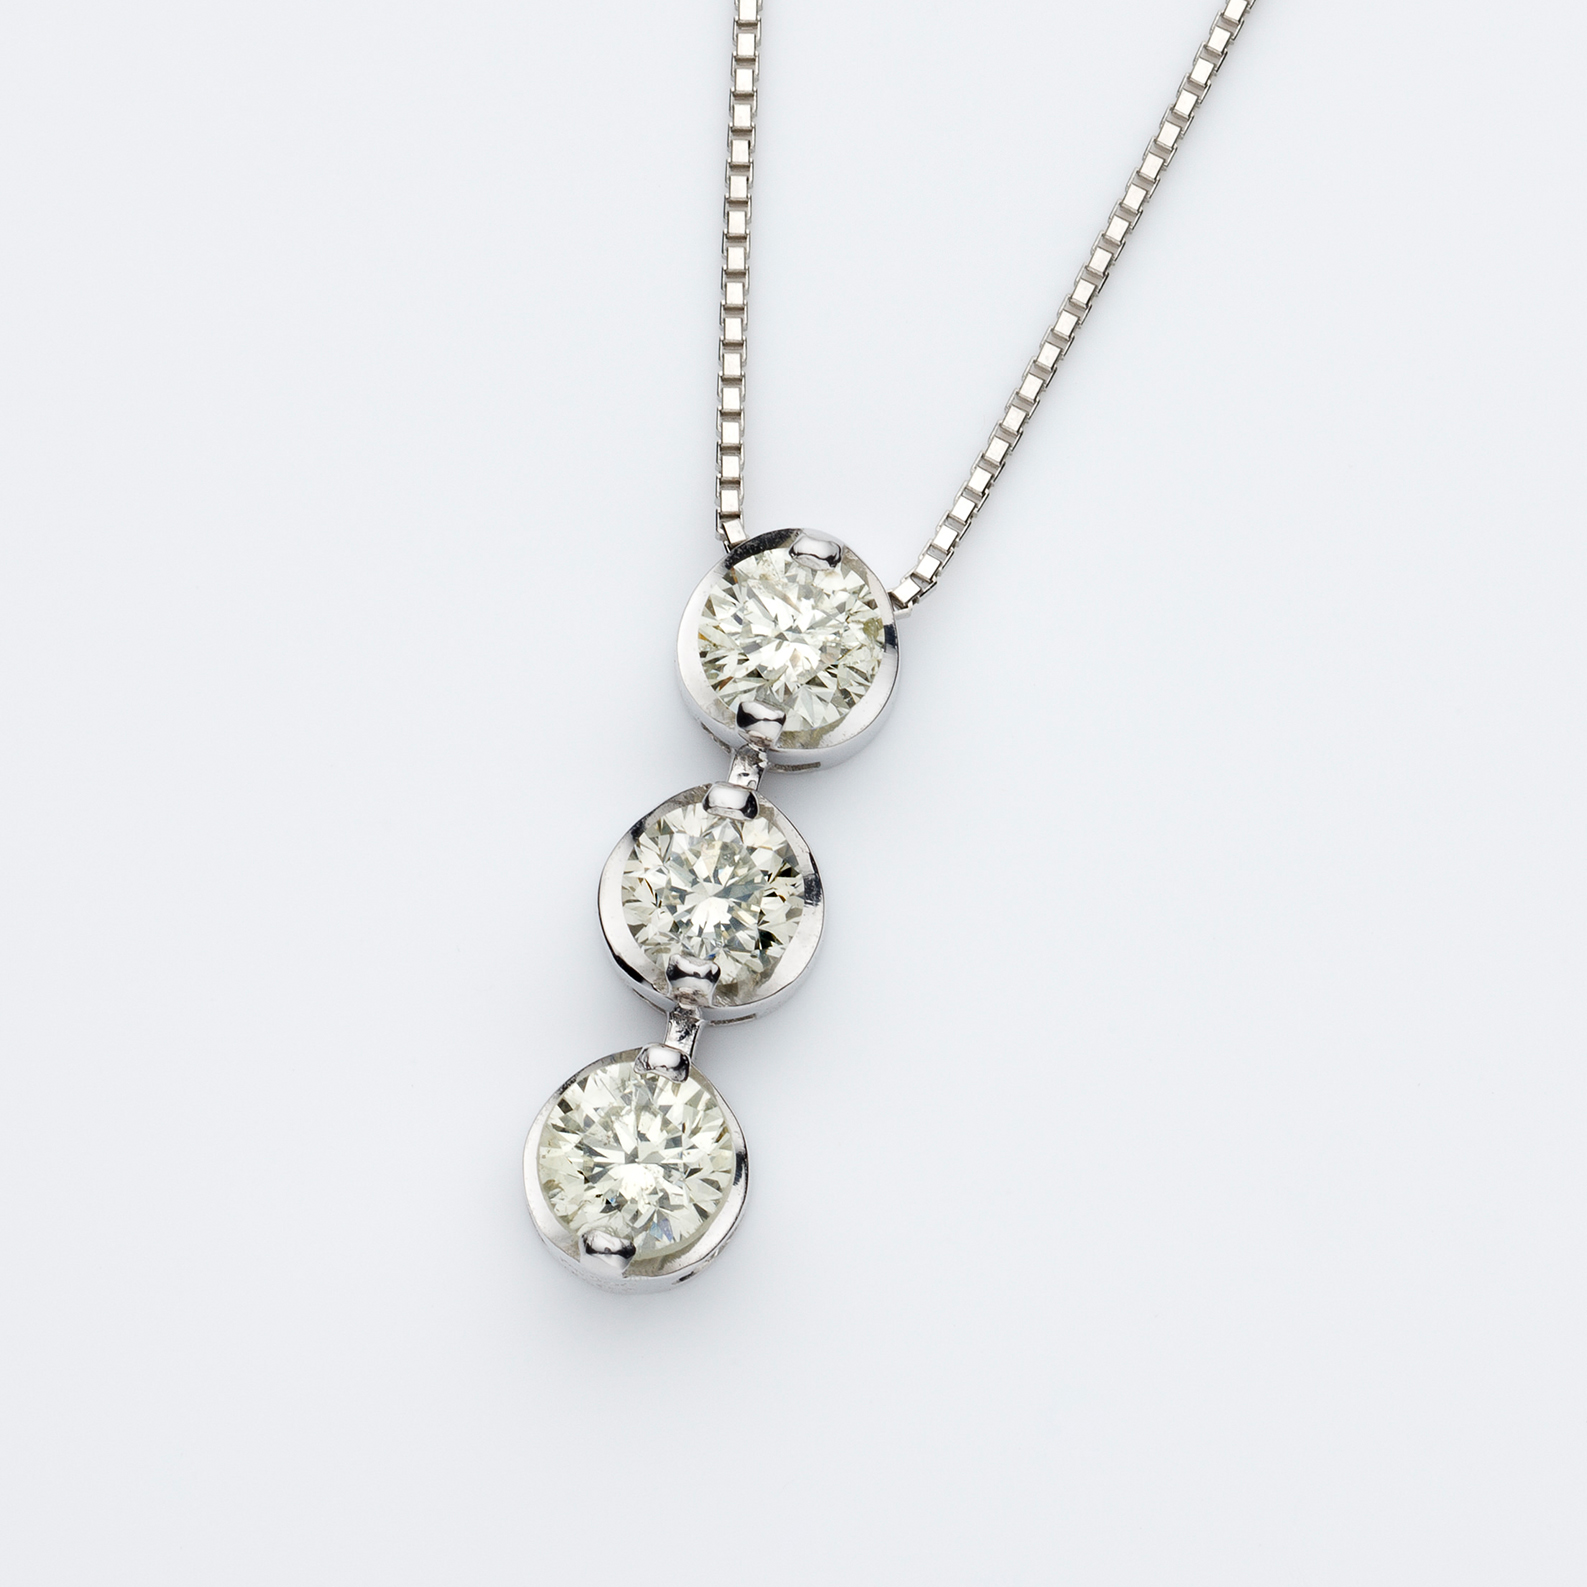 「過去・現在・未来」を表すスリーストーンダイヤモンドネックレス。3石のダイヤモンドが胸元で輝きます。